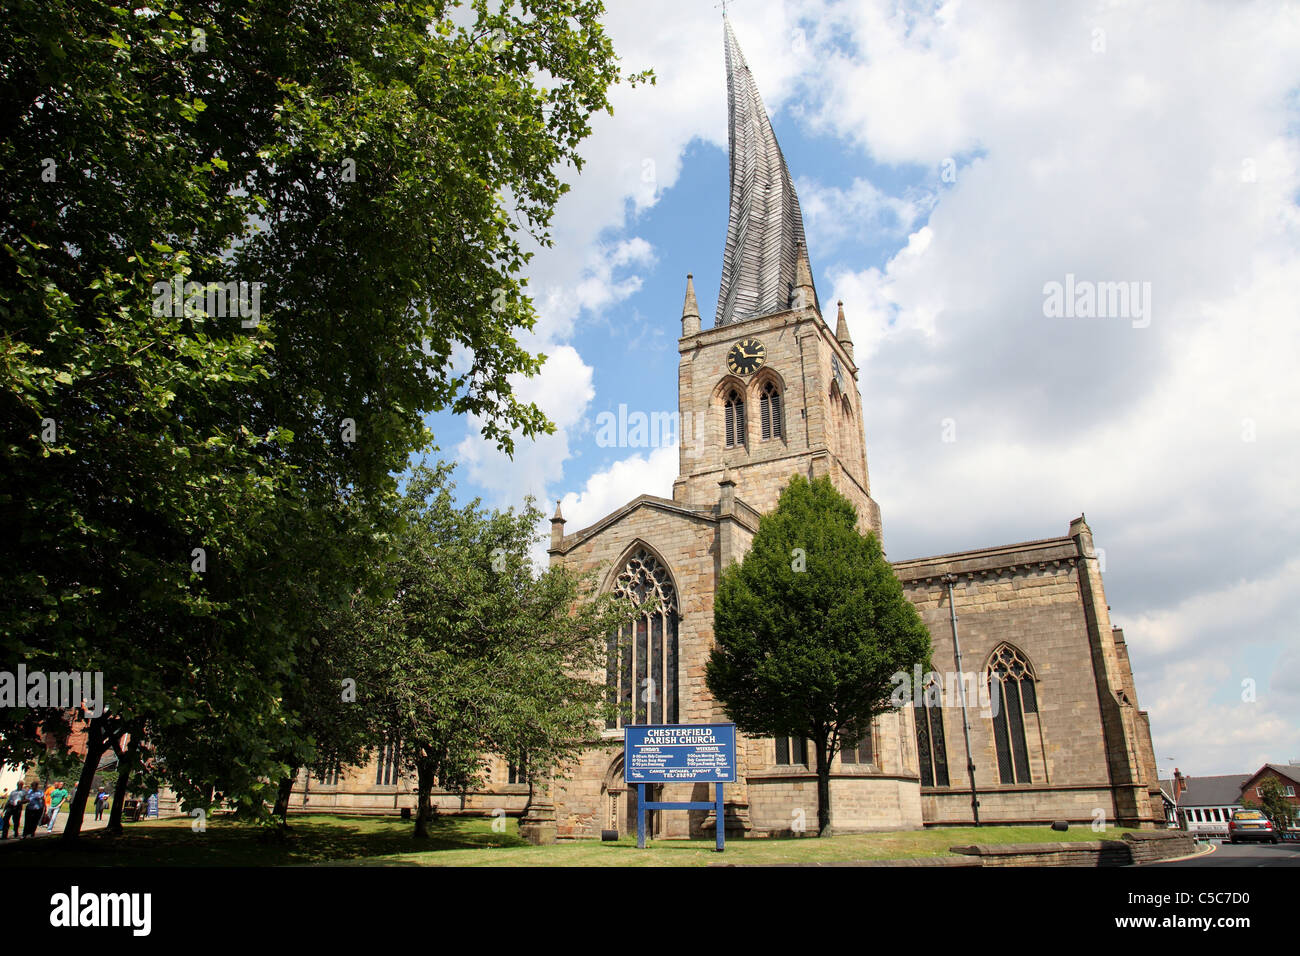 Chesterfield église paroissiale de St Mary's à crooked spire à Chesterfield, Angleterre, Royaume-Uni Banque D'Images